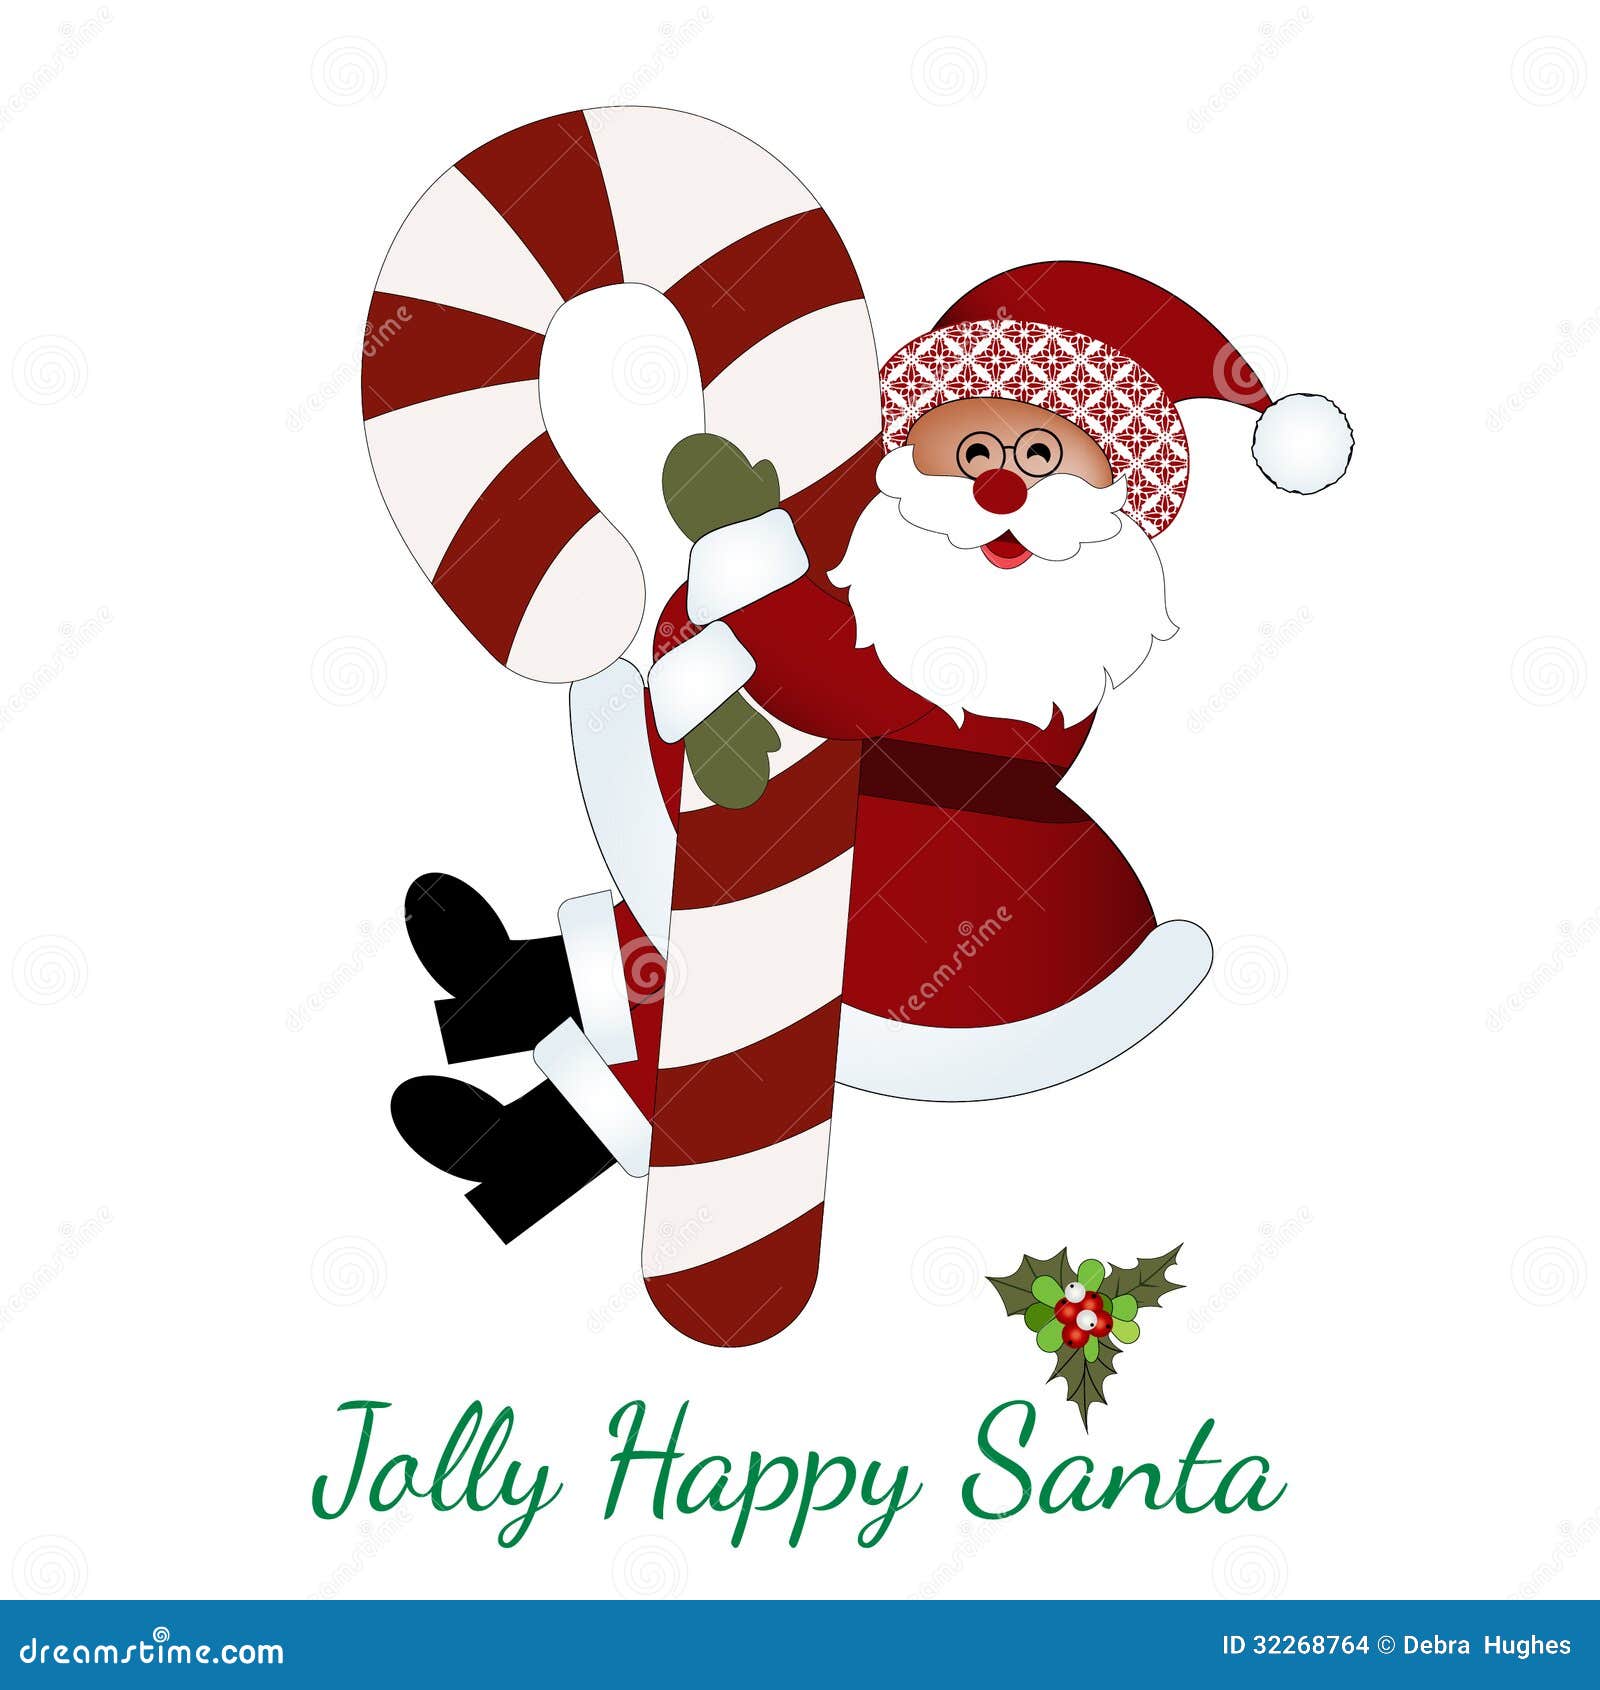 jolly happy santa